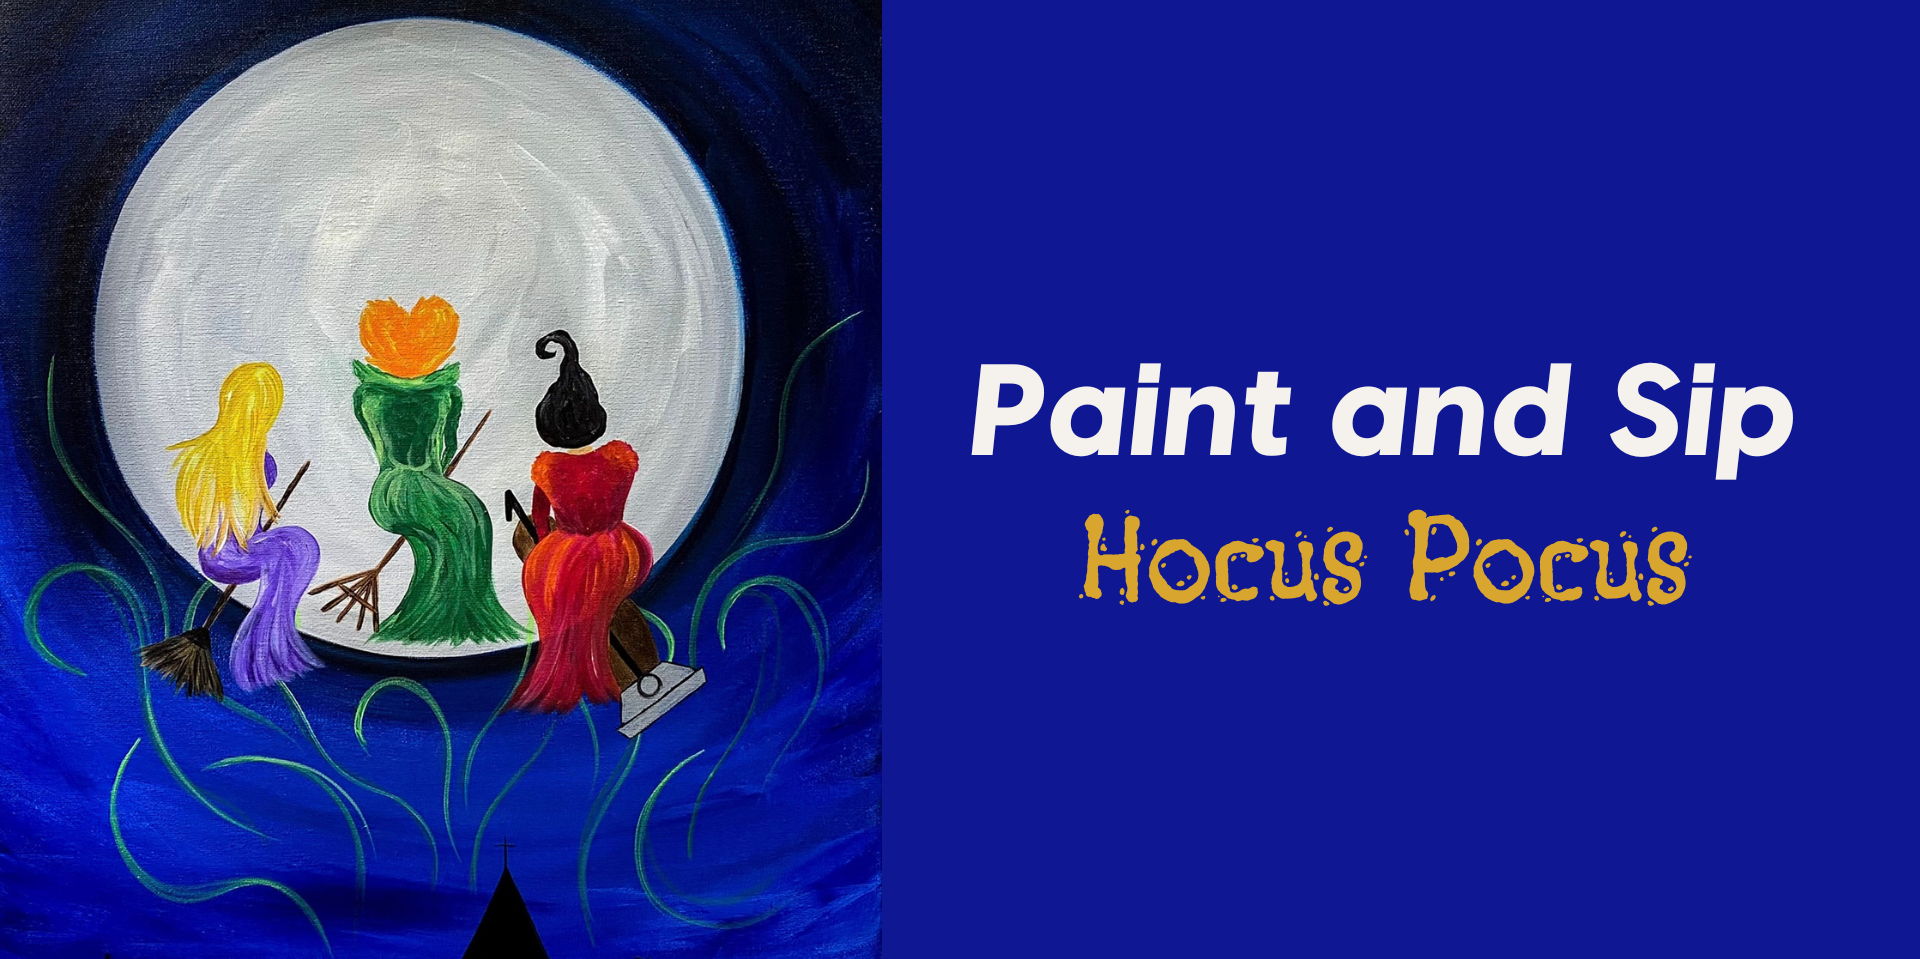 Paint & Sip - Hocus Pocus promotional image